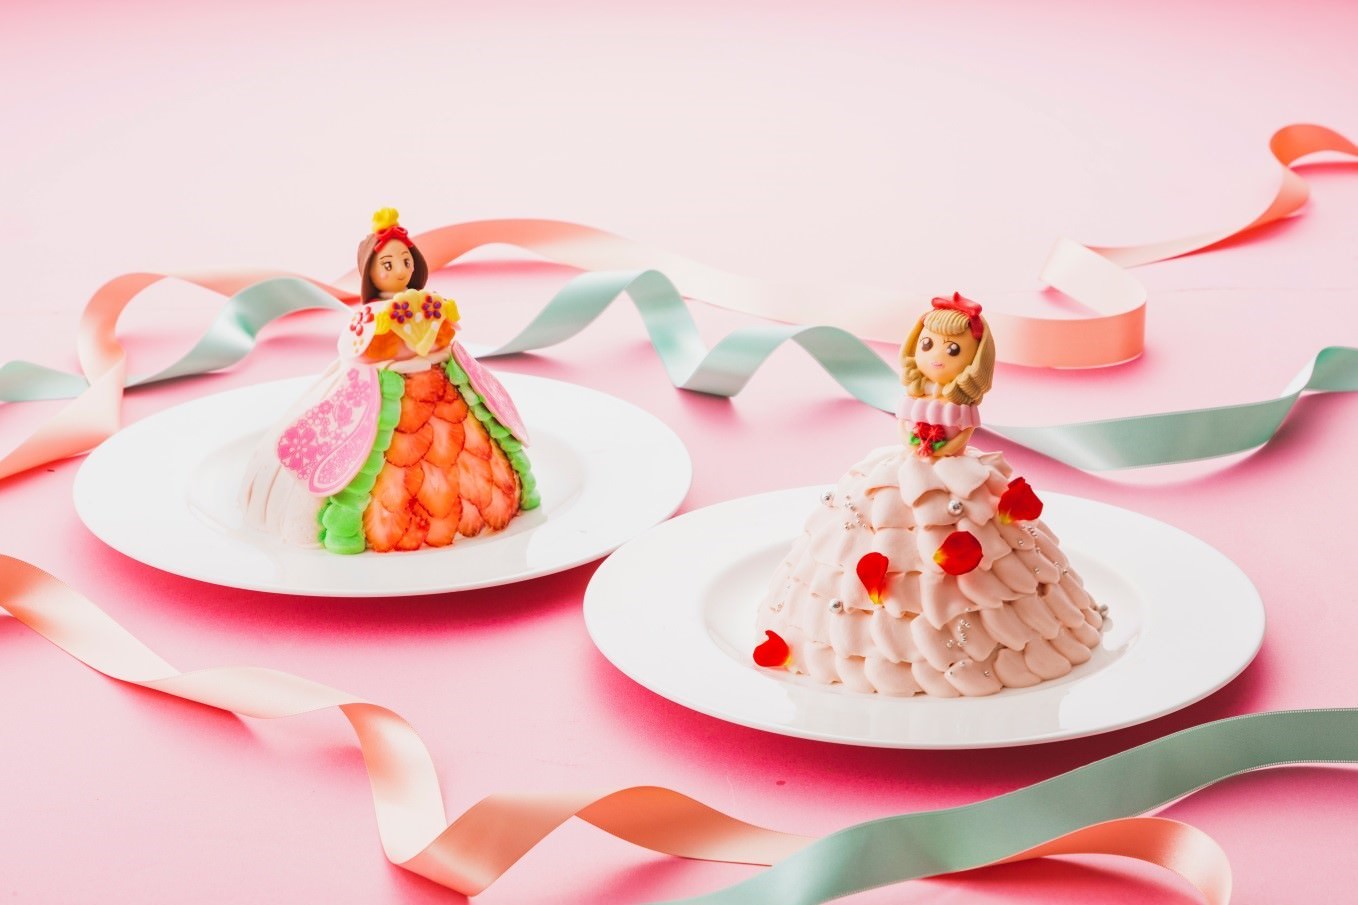 まるでお人形のような3Dひなまつりケーキ
「こひめ」と「ひいな」販売
千里阪急ホテル・ホテル阪急エキスポパークにて
2019年2月25日(月)より予約開始